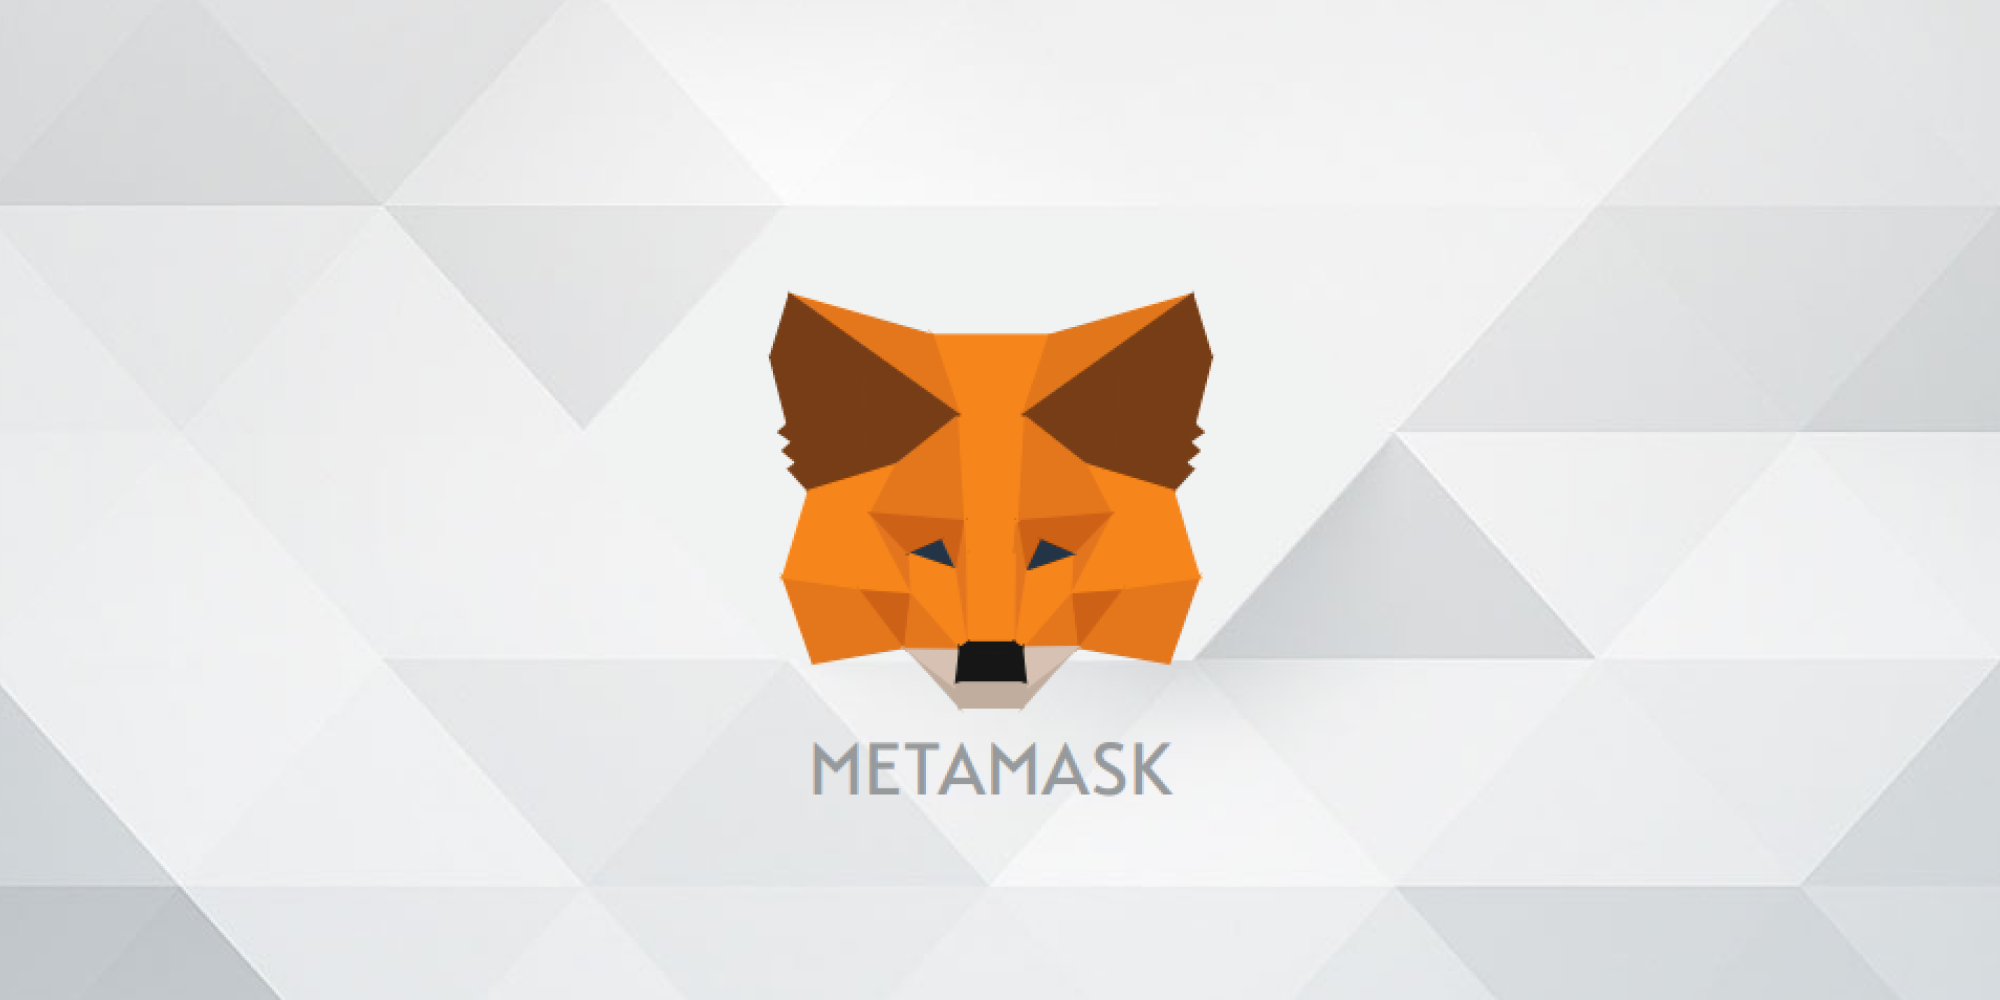 metamask or mist